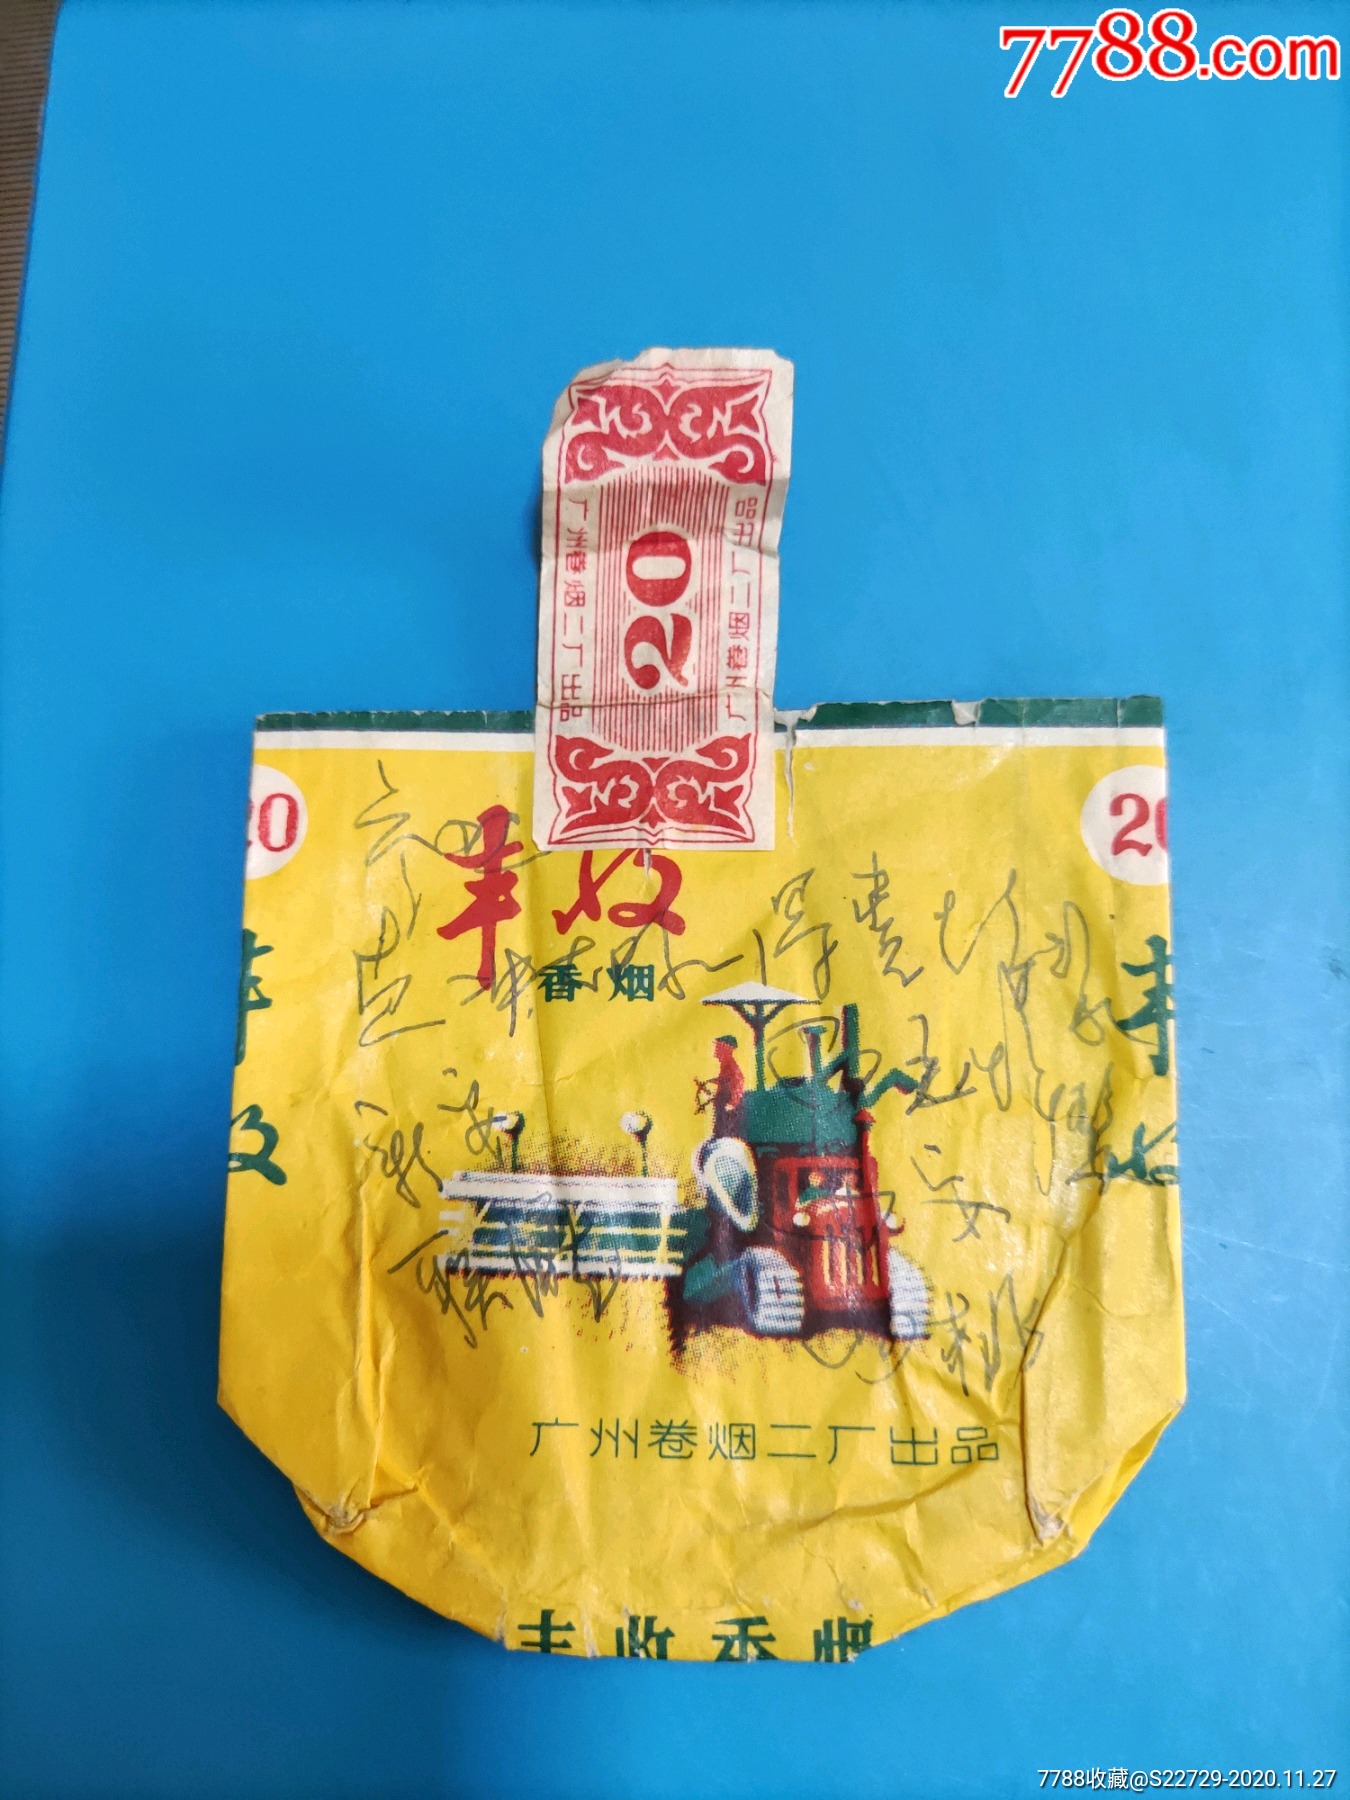 广州卷烟二厂烟标:丰收牌香烟